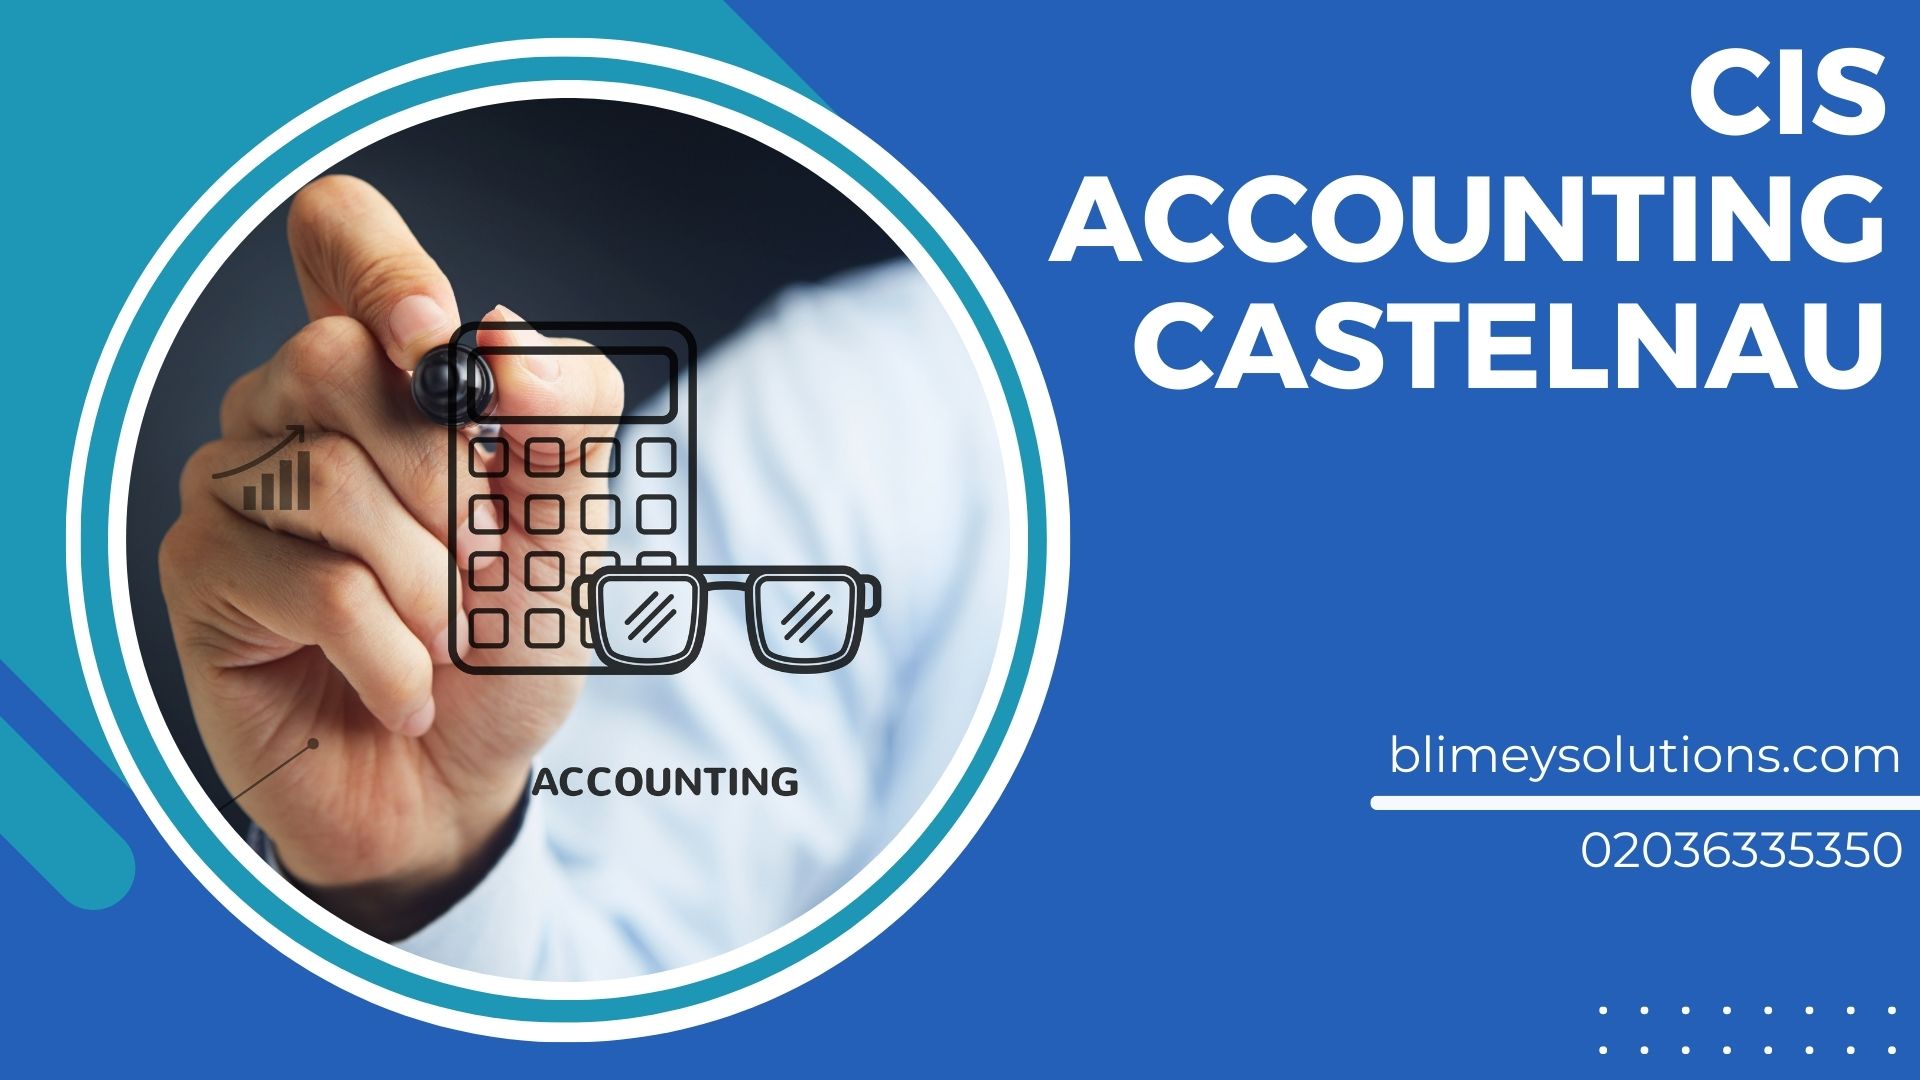 Cis Accounting In Castelnau Sw13 London